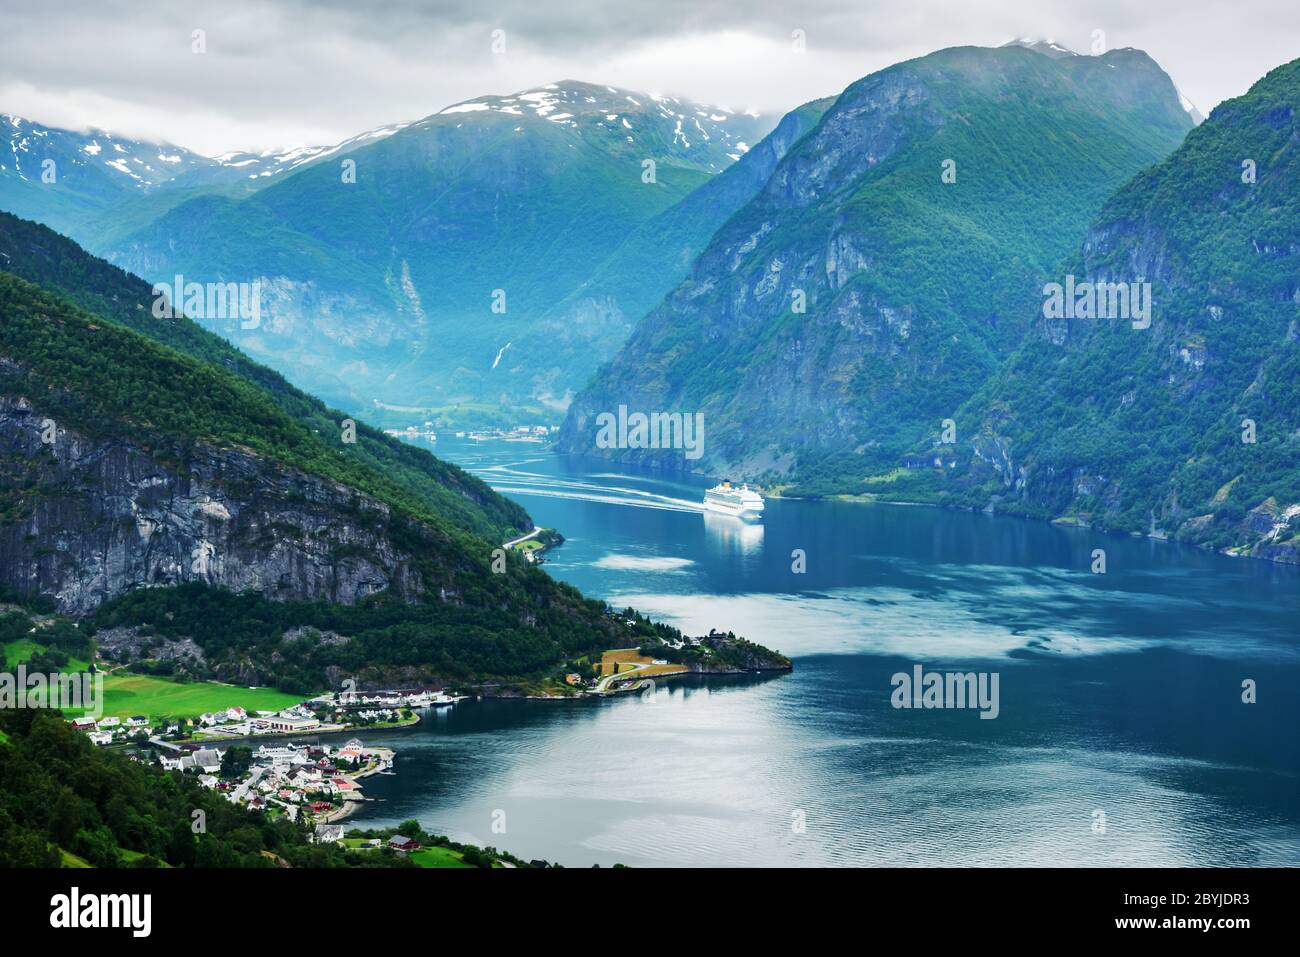 Atemberaubender Blick auf den Sunnylvsfjord-Fjord und das Kreuzfahrtschiff, in der Nähe des Dorfes Geiranger im Westen Norwegens. Landschaftsfotografie Stockfoto